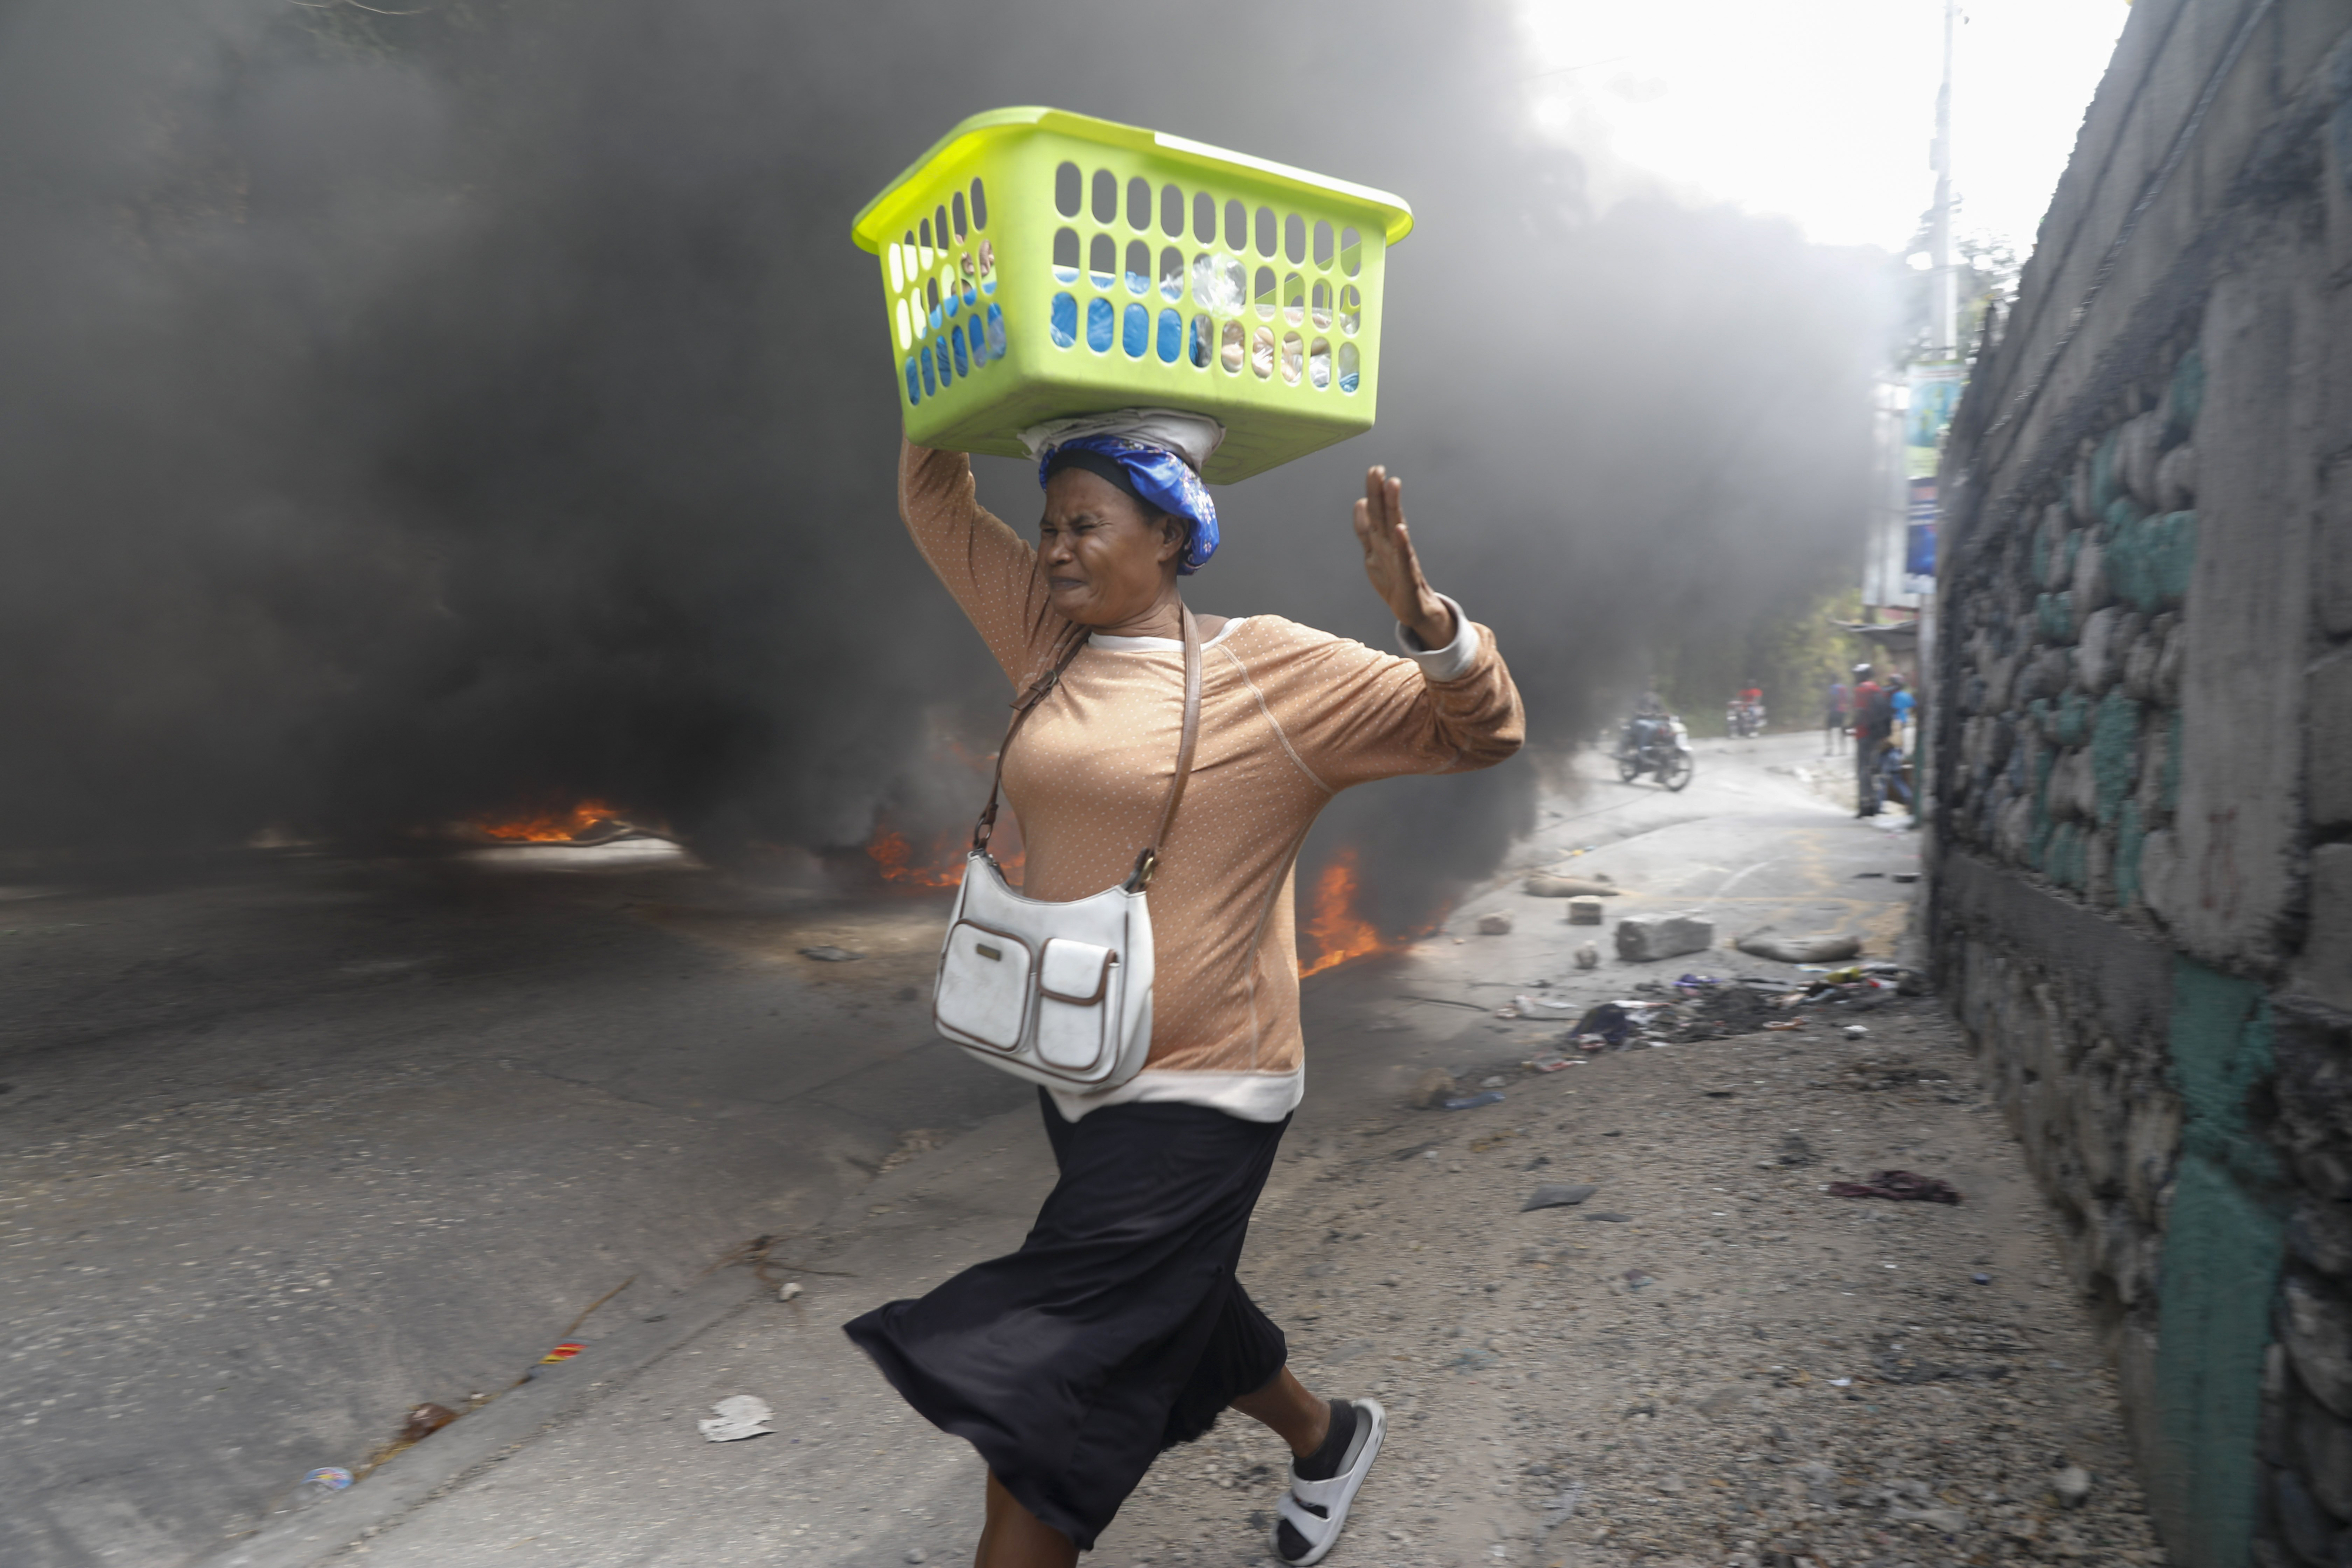 지난 5일(현지시간) 아이티 수도 포르토프랭스에서 한 여인이 불붙은 타이어 옆을 황급히 지나가고 있다. 아리엘 앙리 총리 사임을 요구하는 시위대는 도로를 점거한 채 폐타이어에 불을 지르거나 주요 시설물에 돌을 던지는 등 격렬한 시위를 벌였다. AP 연합뉴스